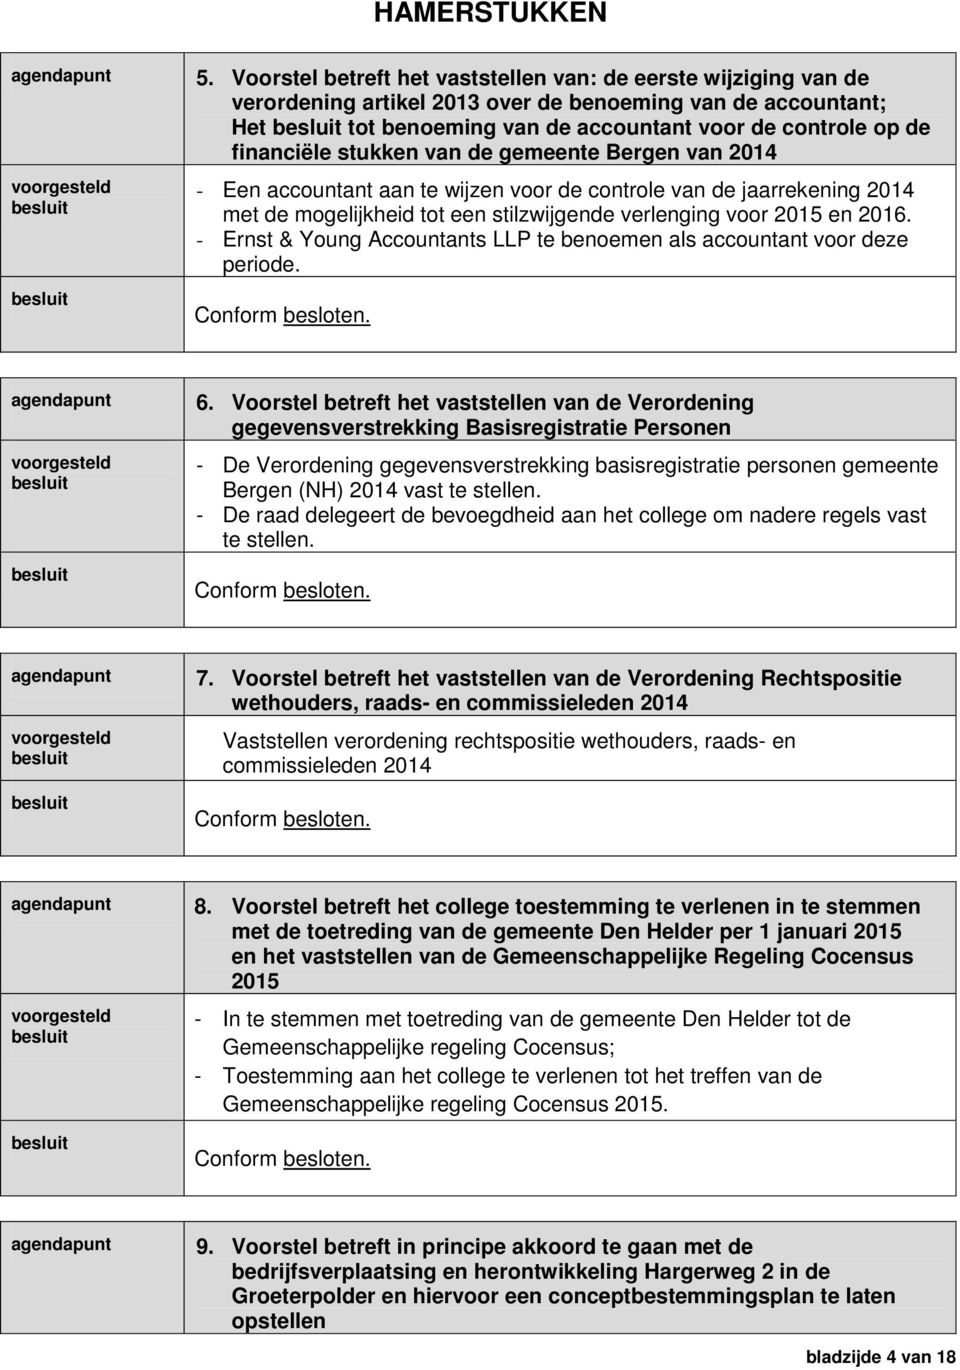 stukken van de gemeente Bergen van 2014 - Een accountant aan te wijzen voor de controle van de jaarrekening 2014 met de mogelijkheid tot een stilzwijgende verlenging voor 2015 en 2016.